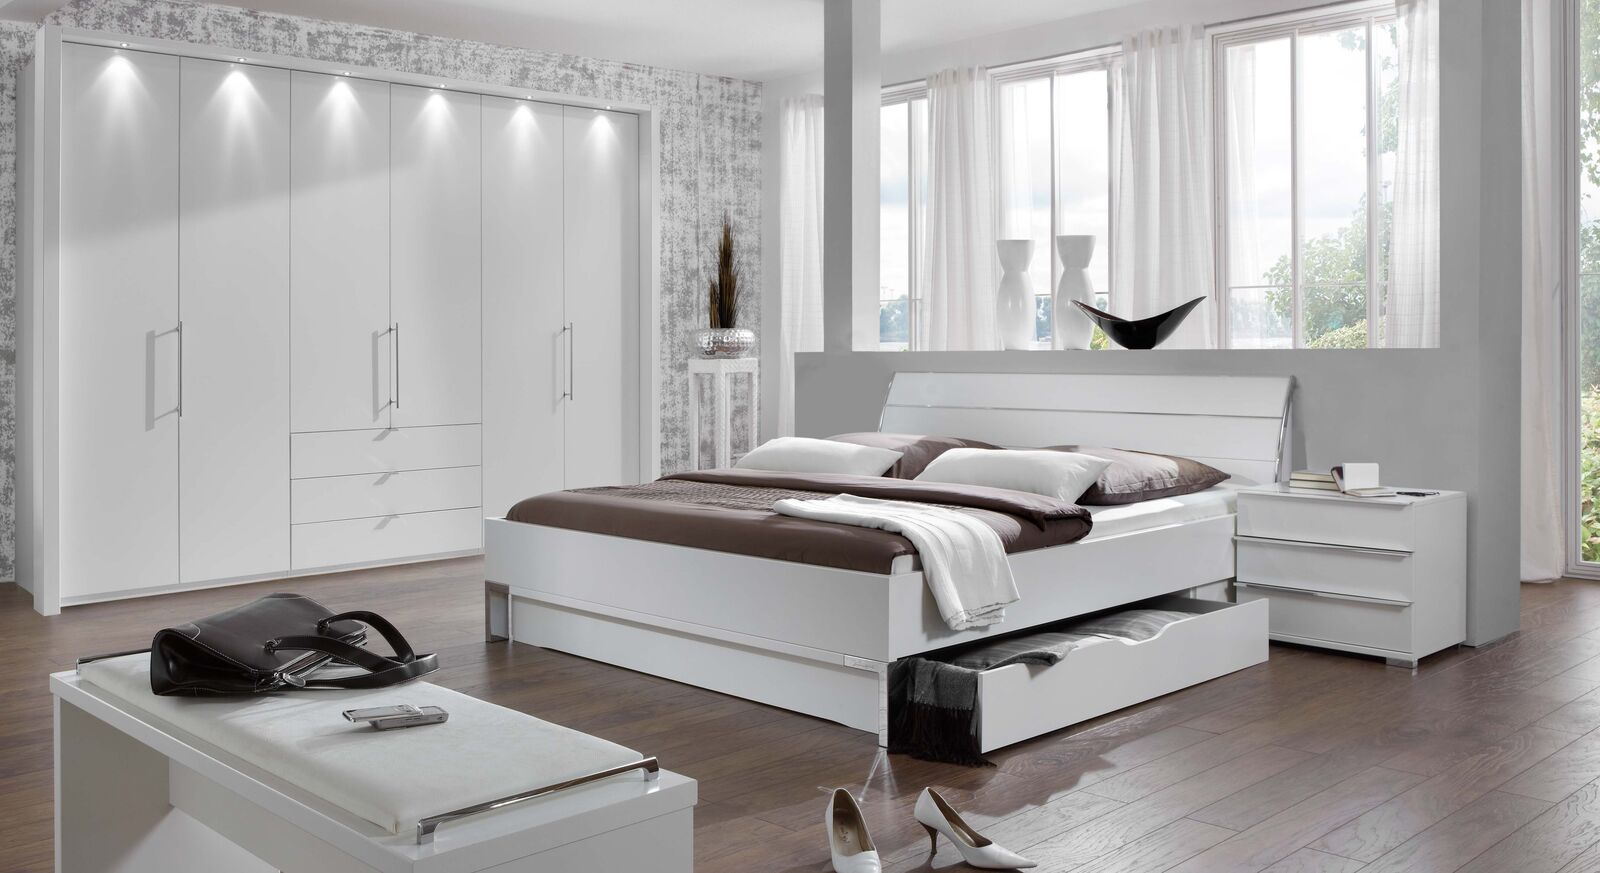 Komplett-Schlafzimmer Salford im Landhausstil in Weiß 